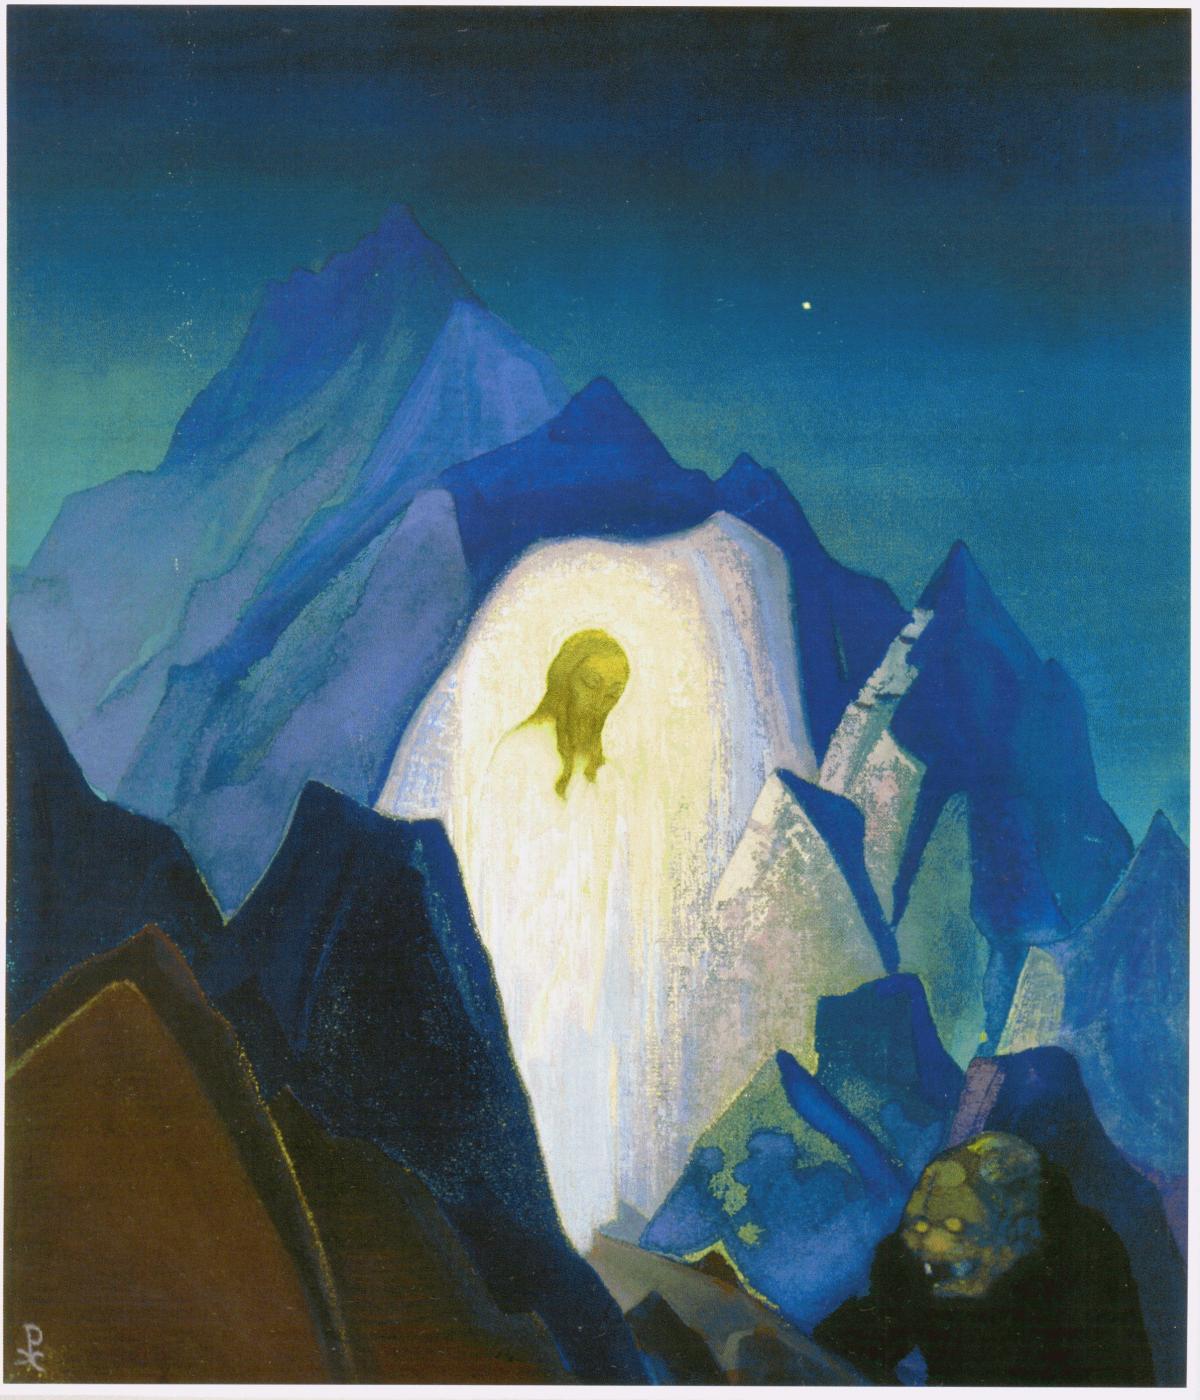 Н. К. Рерих. Христос в пустыне. 1933. Холст, темпера (Государственный музей Востока)